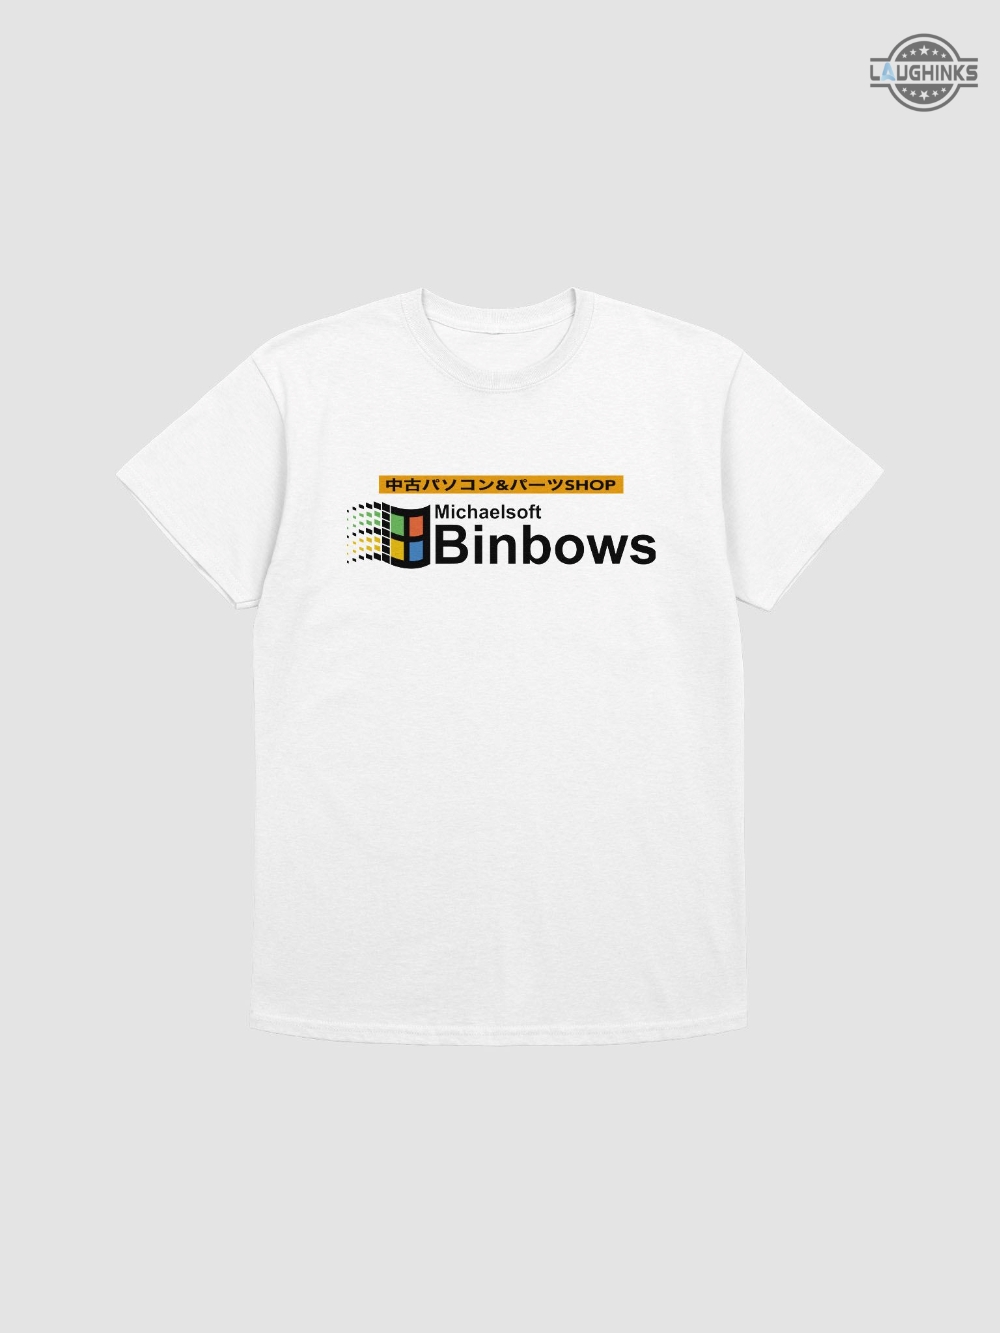 Michaelsoft Binbows Shirt Michaelsoft Binbows T Shirt Sale Michaelsoft Binbows Meme Sweatshirt Michaelsoft Binbows Logo Hoodie